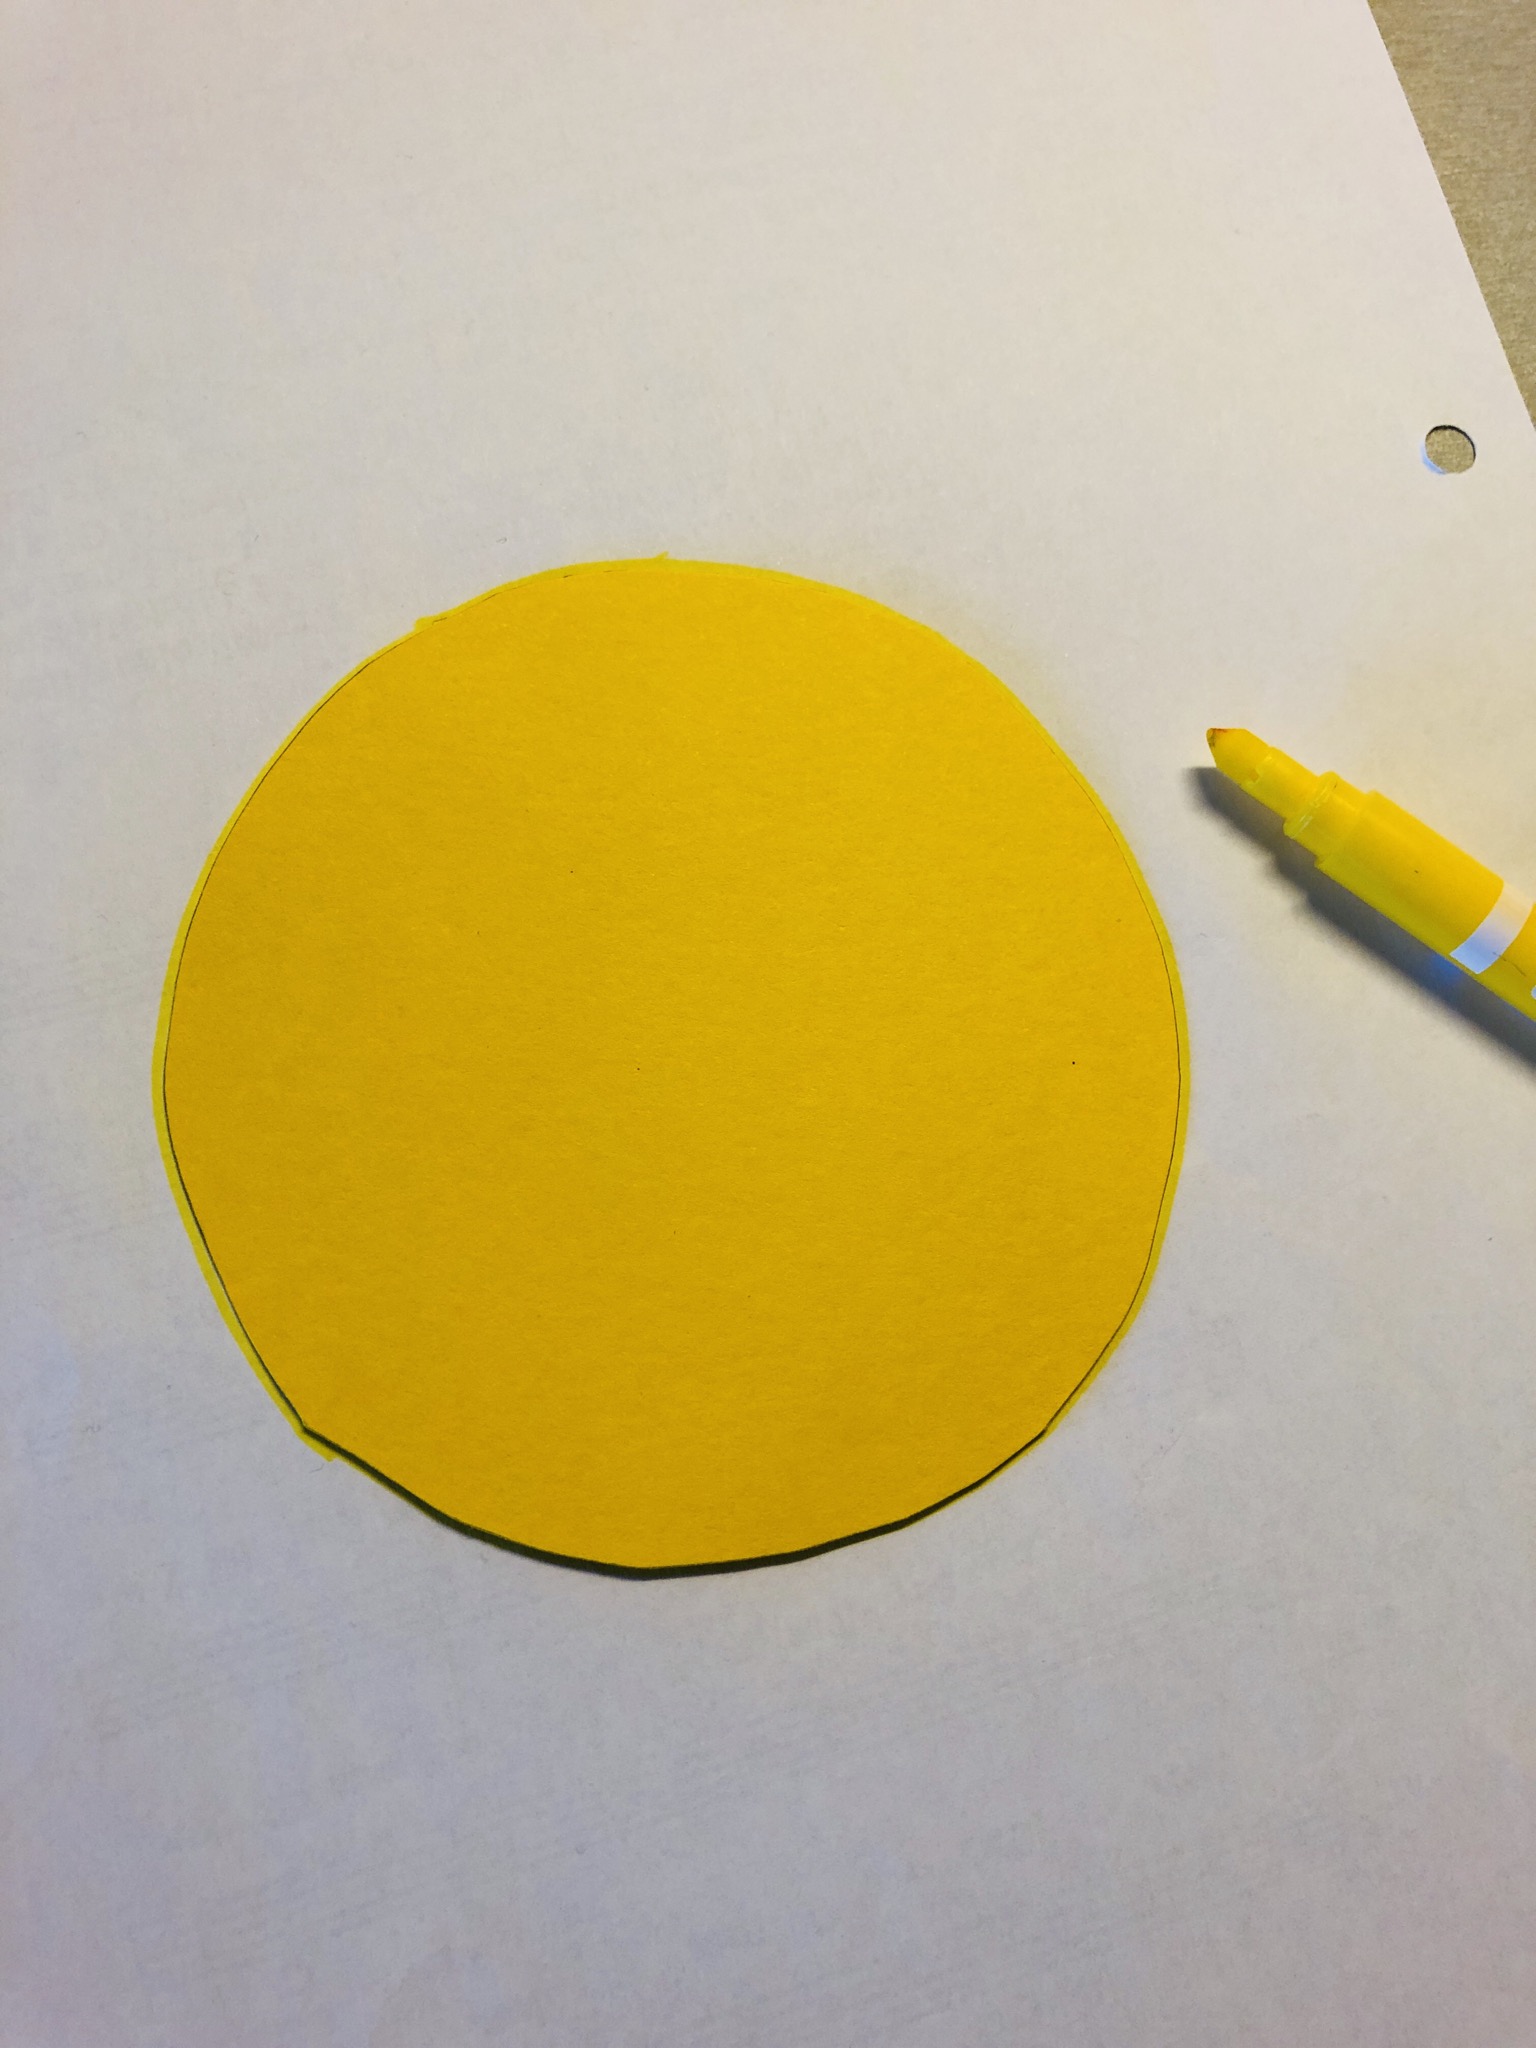 Bild zum Schritt 4 für die Kinder-Beschäftigung: 'Übertragt euren Kreis mit einem gelben Stift auf das weiße...'